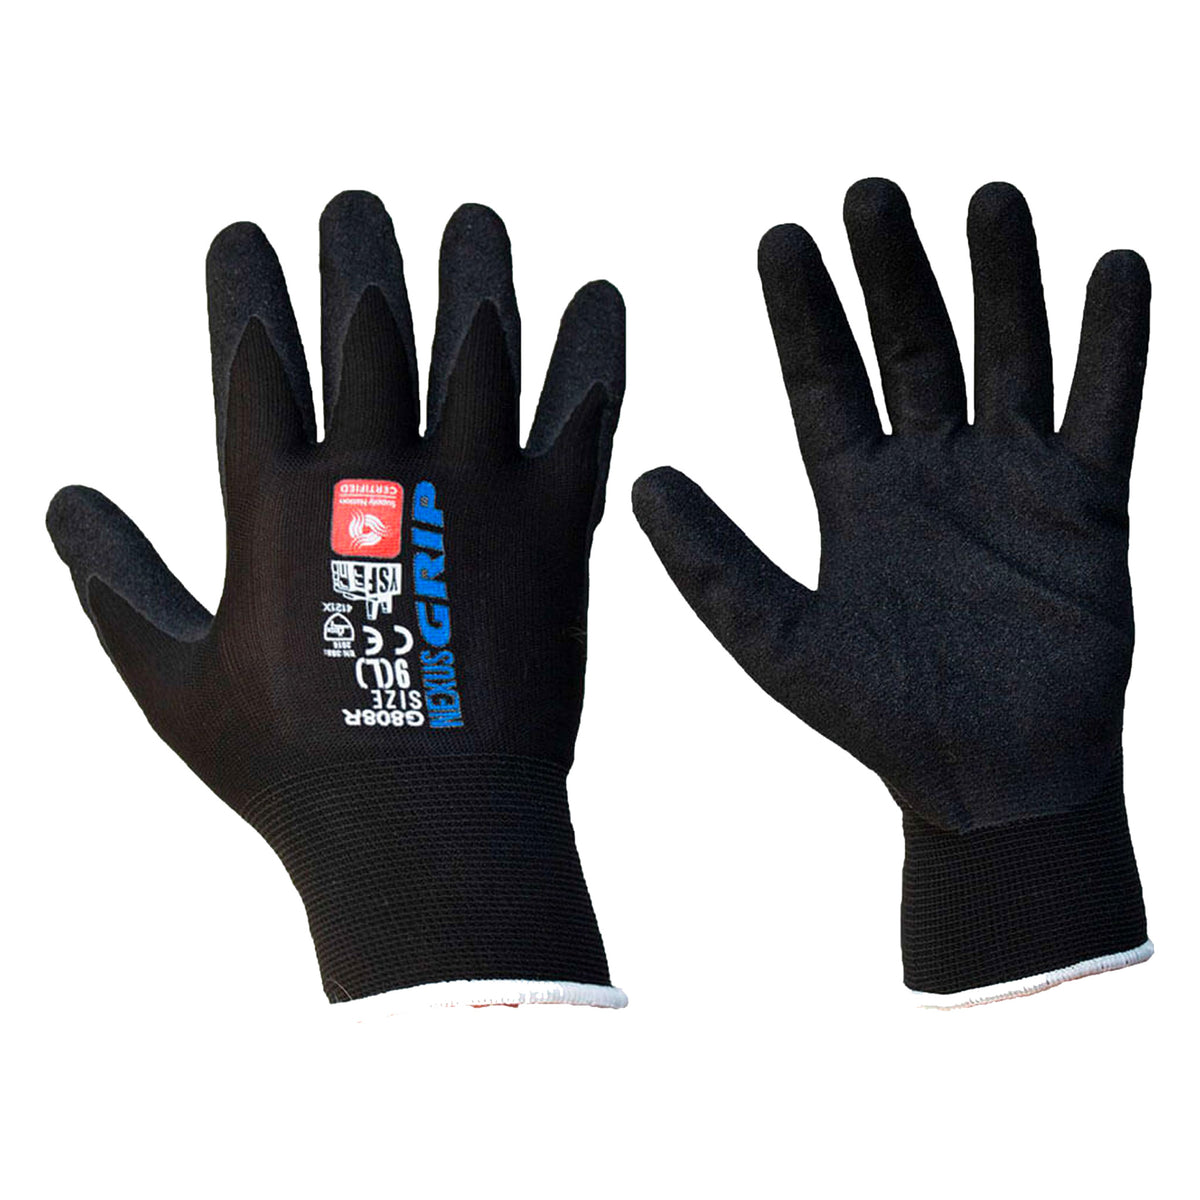 nexus grip glove